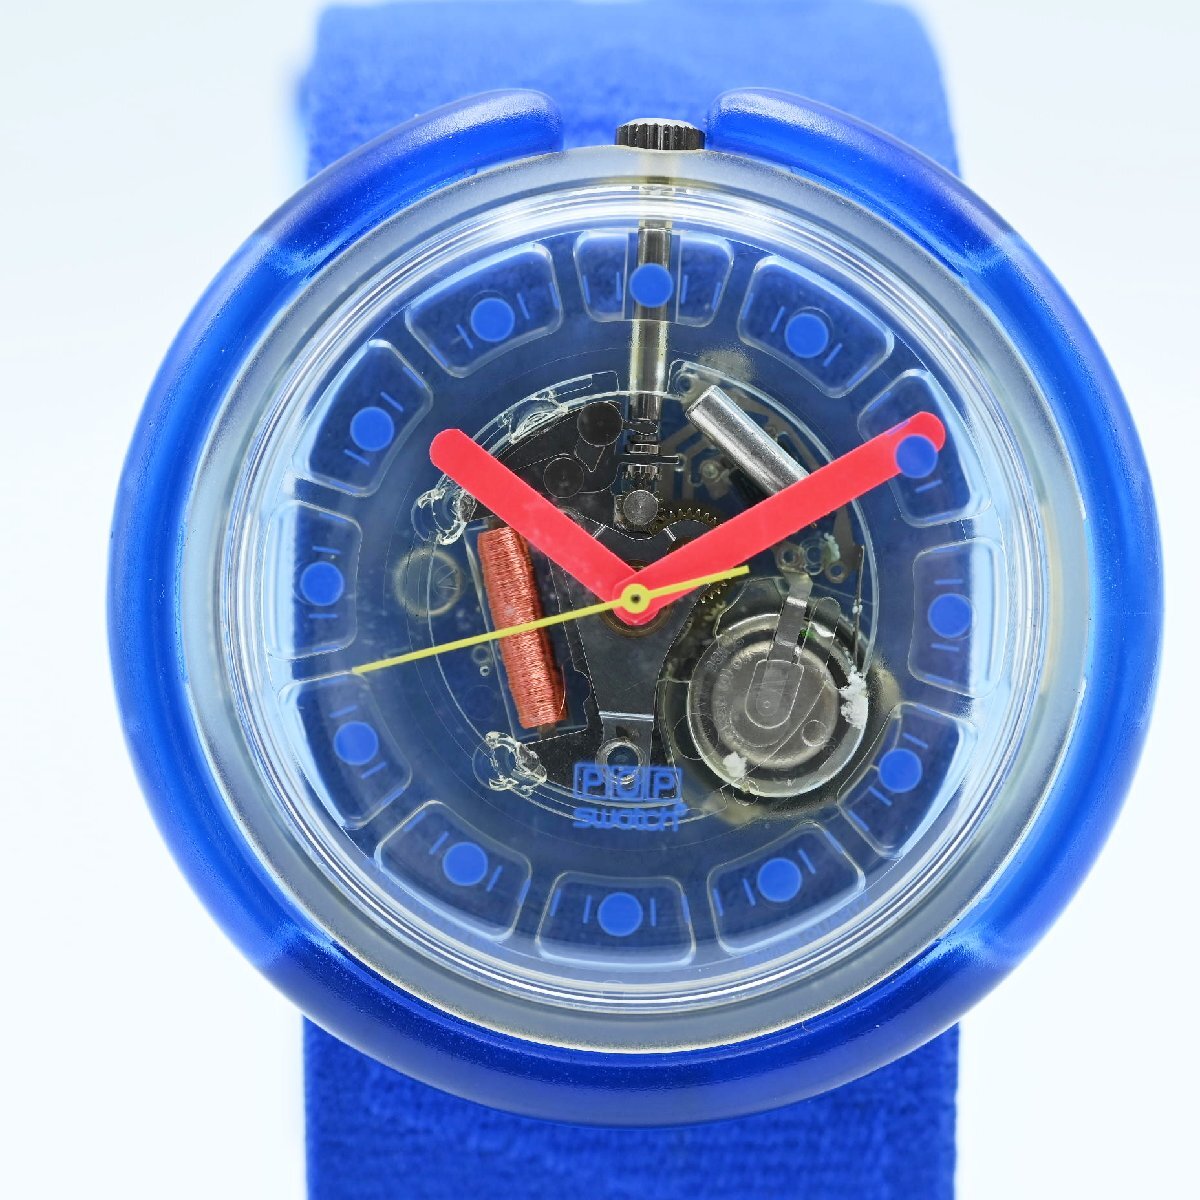 K04 Swatch スウォッチ スケルトン プラスチック/ゴムベルト メンズ クオーツ時計 ネイビー ジャンクの画像1